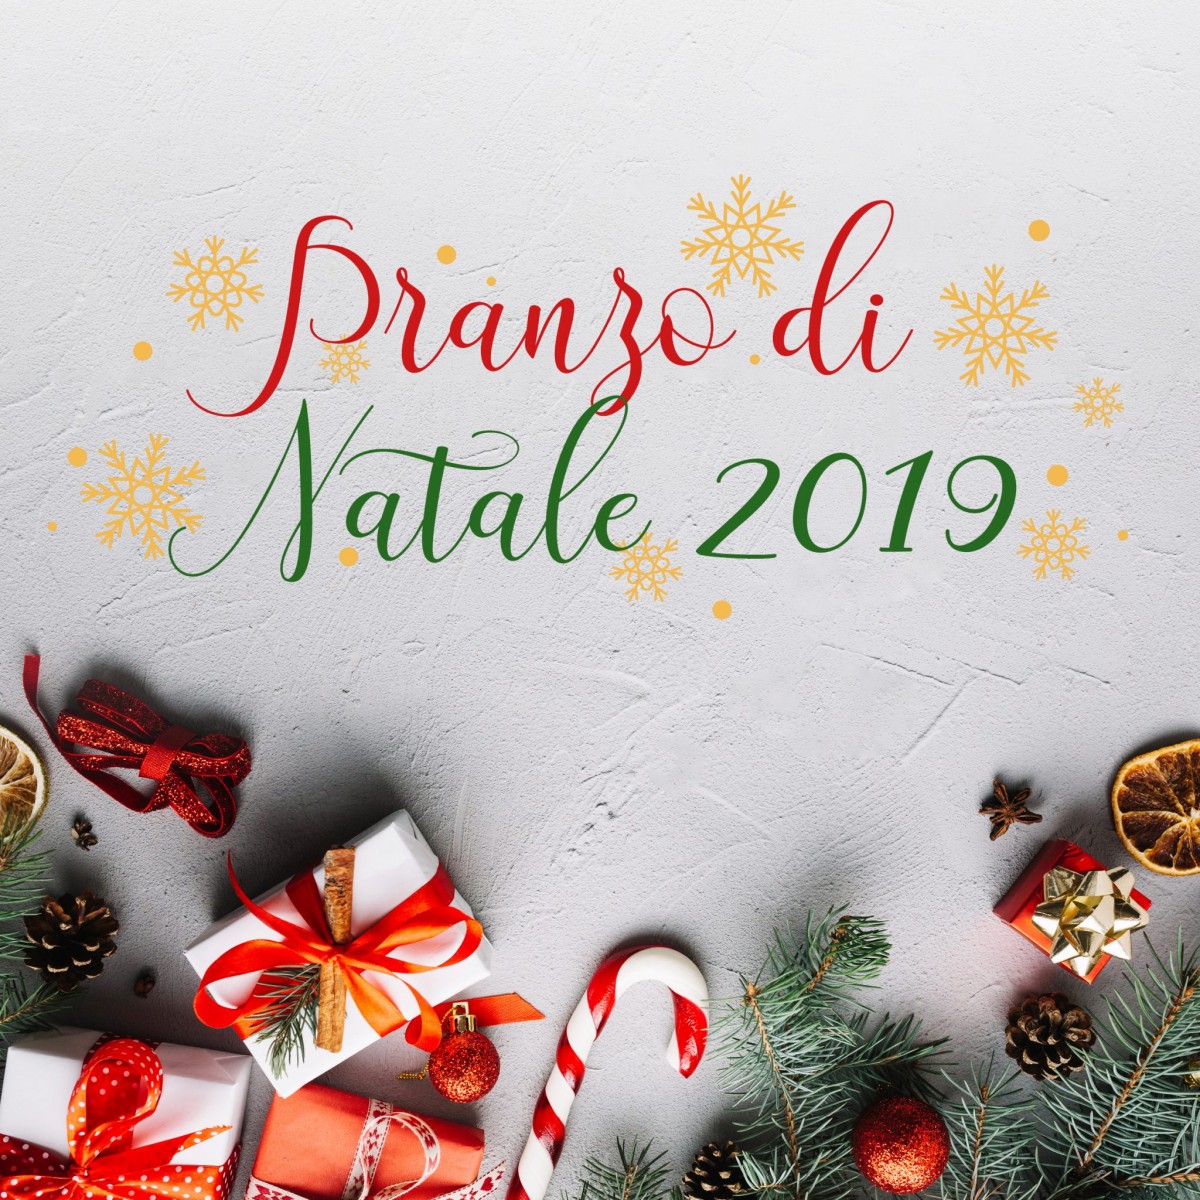 Decorazioni Menu Natale.Pranzo Di Natale 2019 Ristorante Pizzeria Bel Sit